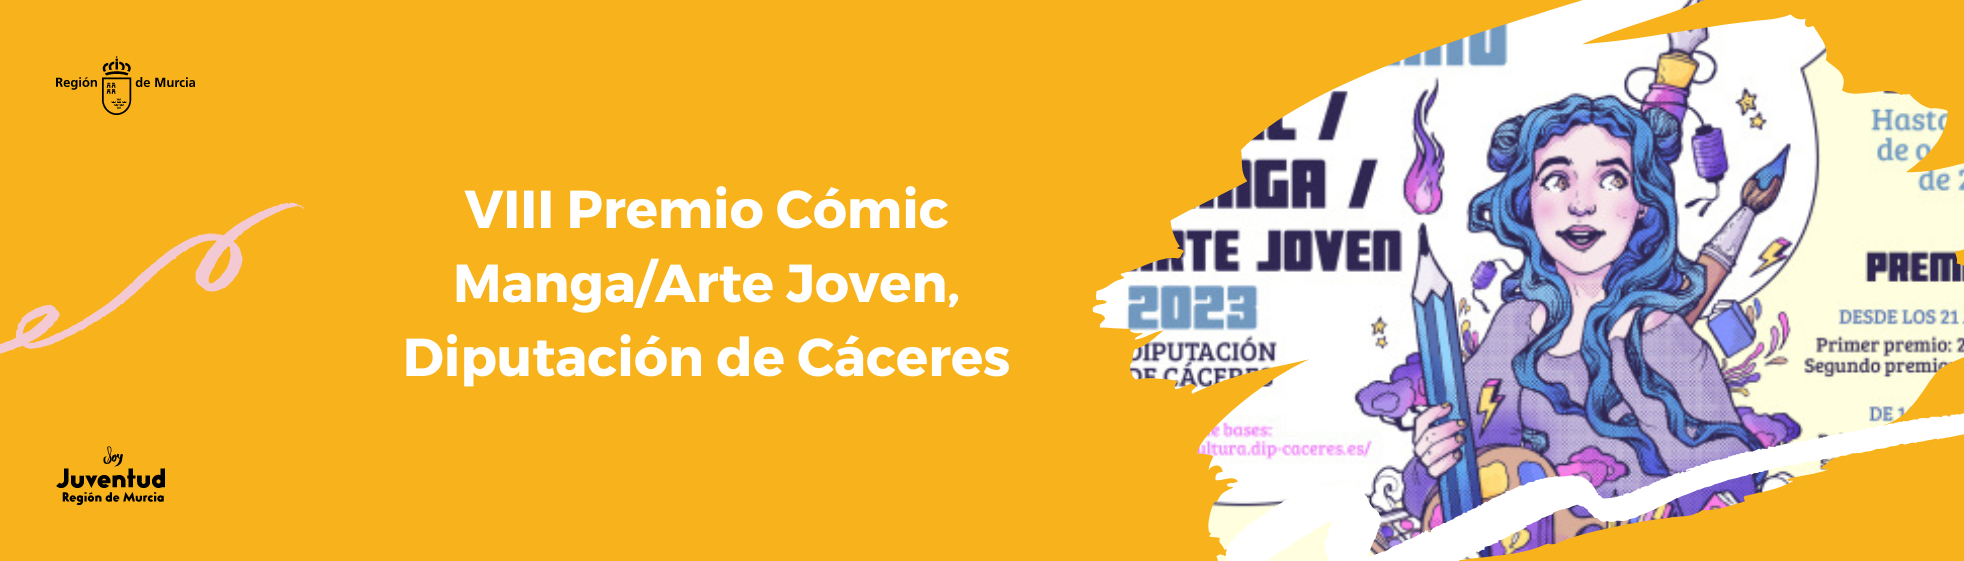 VIII Premio Cómic Manga/Arte Joven, Diputación de Cáceres